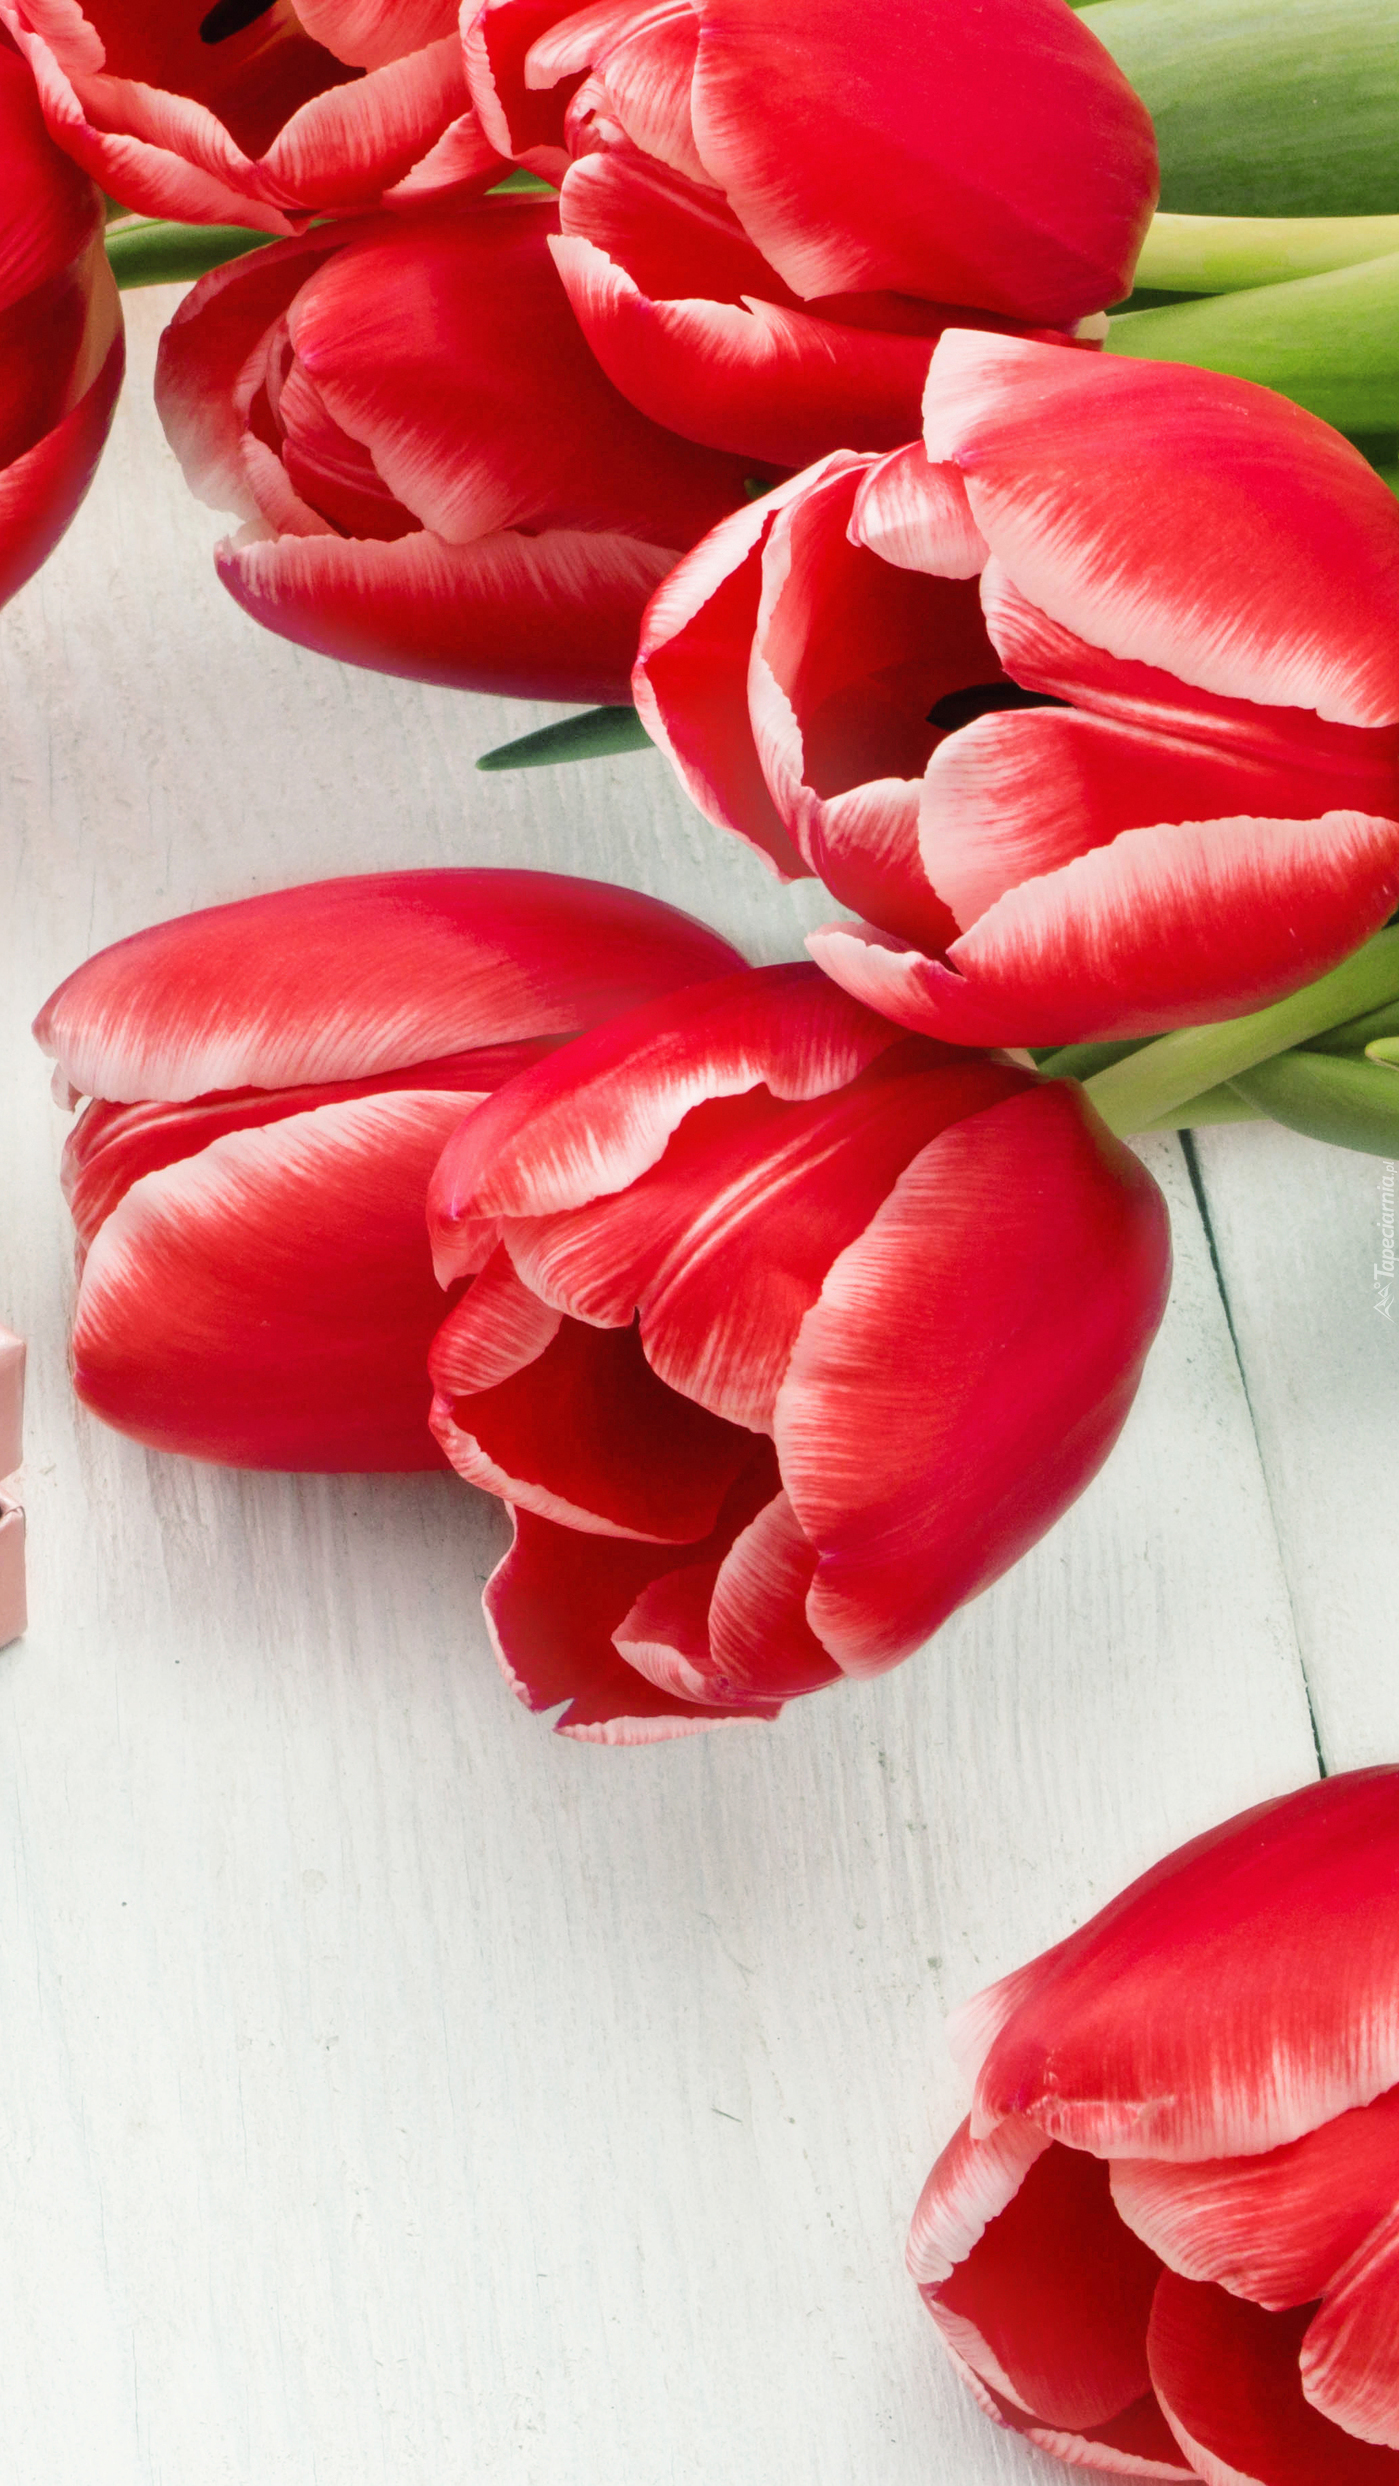 Czerwone tulipany na białych deskach